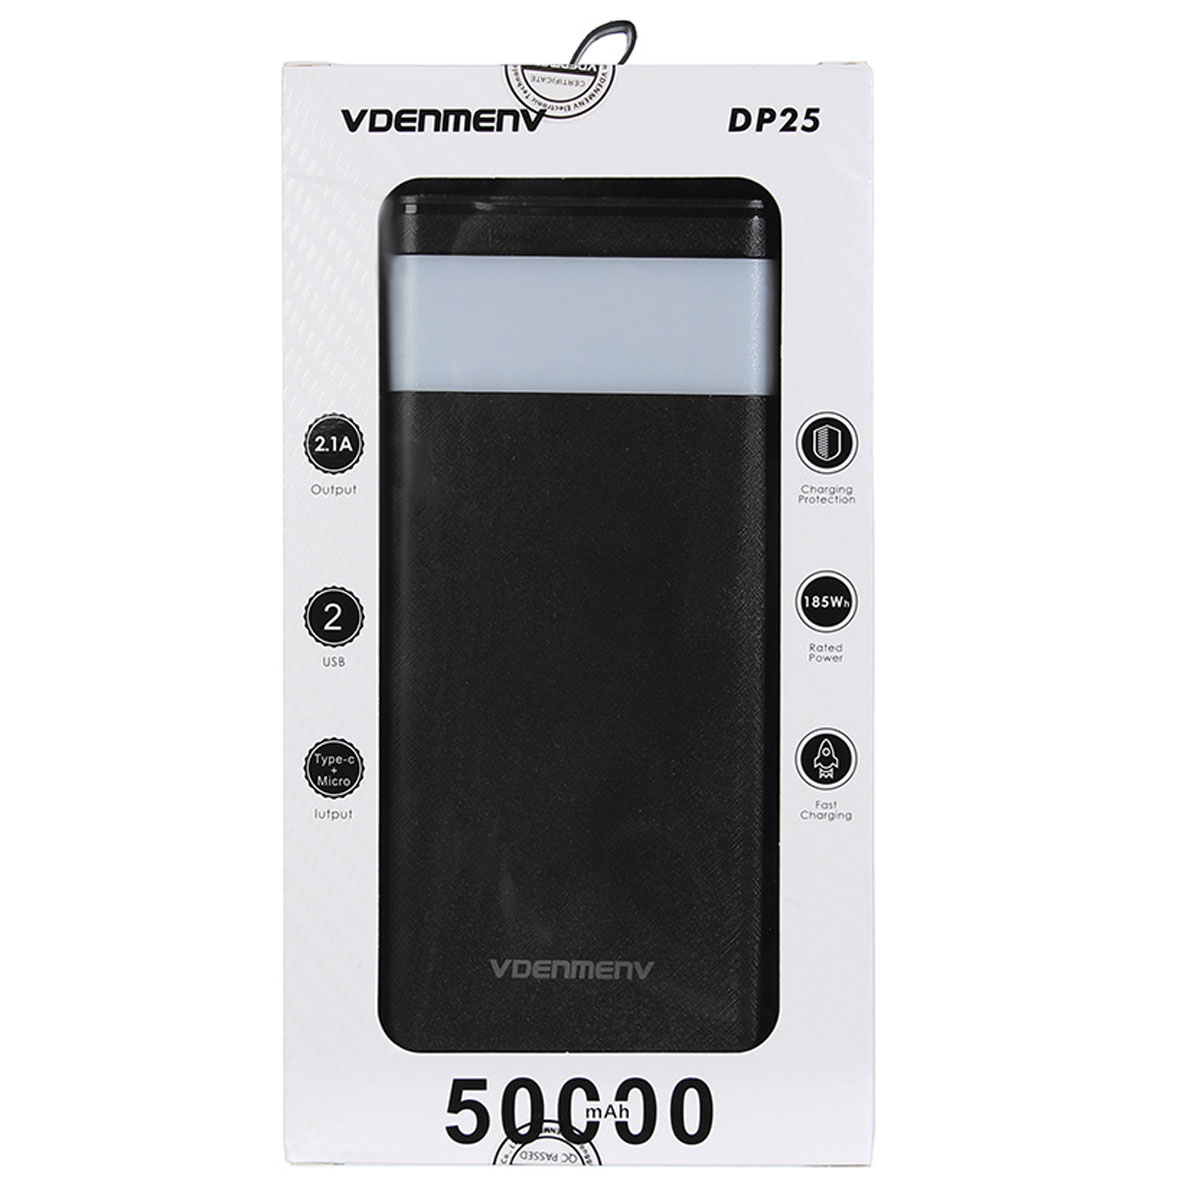 Внешний портативный аккумулятор, Power Bank VDENMENV DP25, 50000mAh, цвет черный